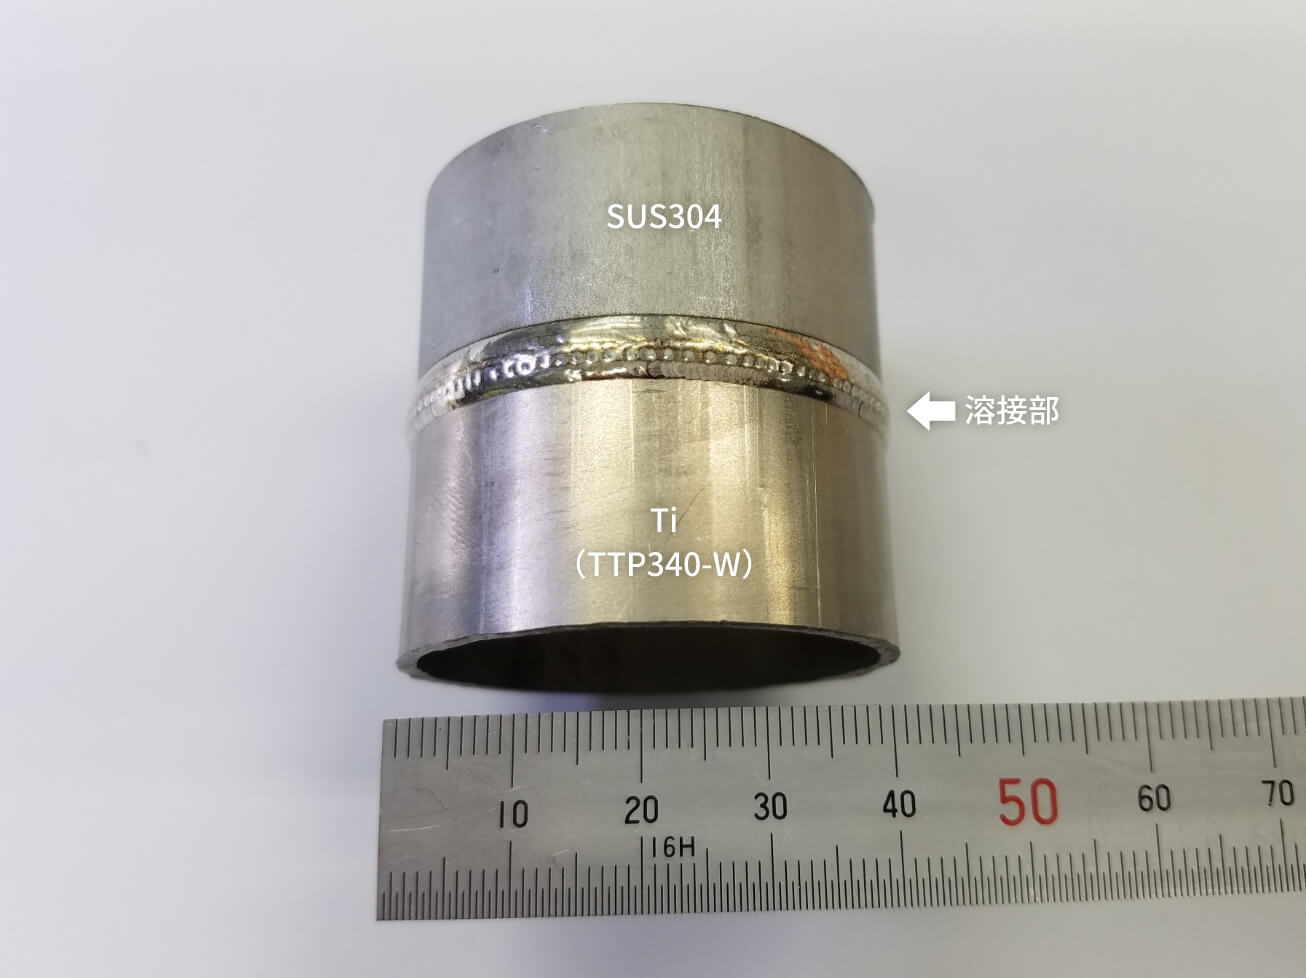 SUS304×Ti合金（TTP340-W）